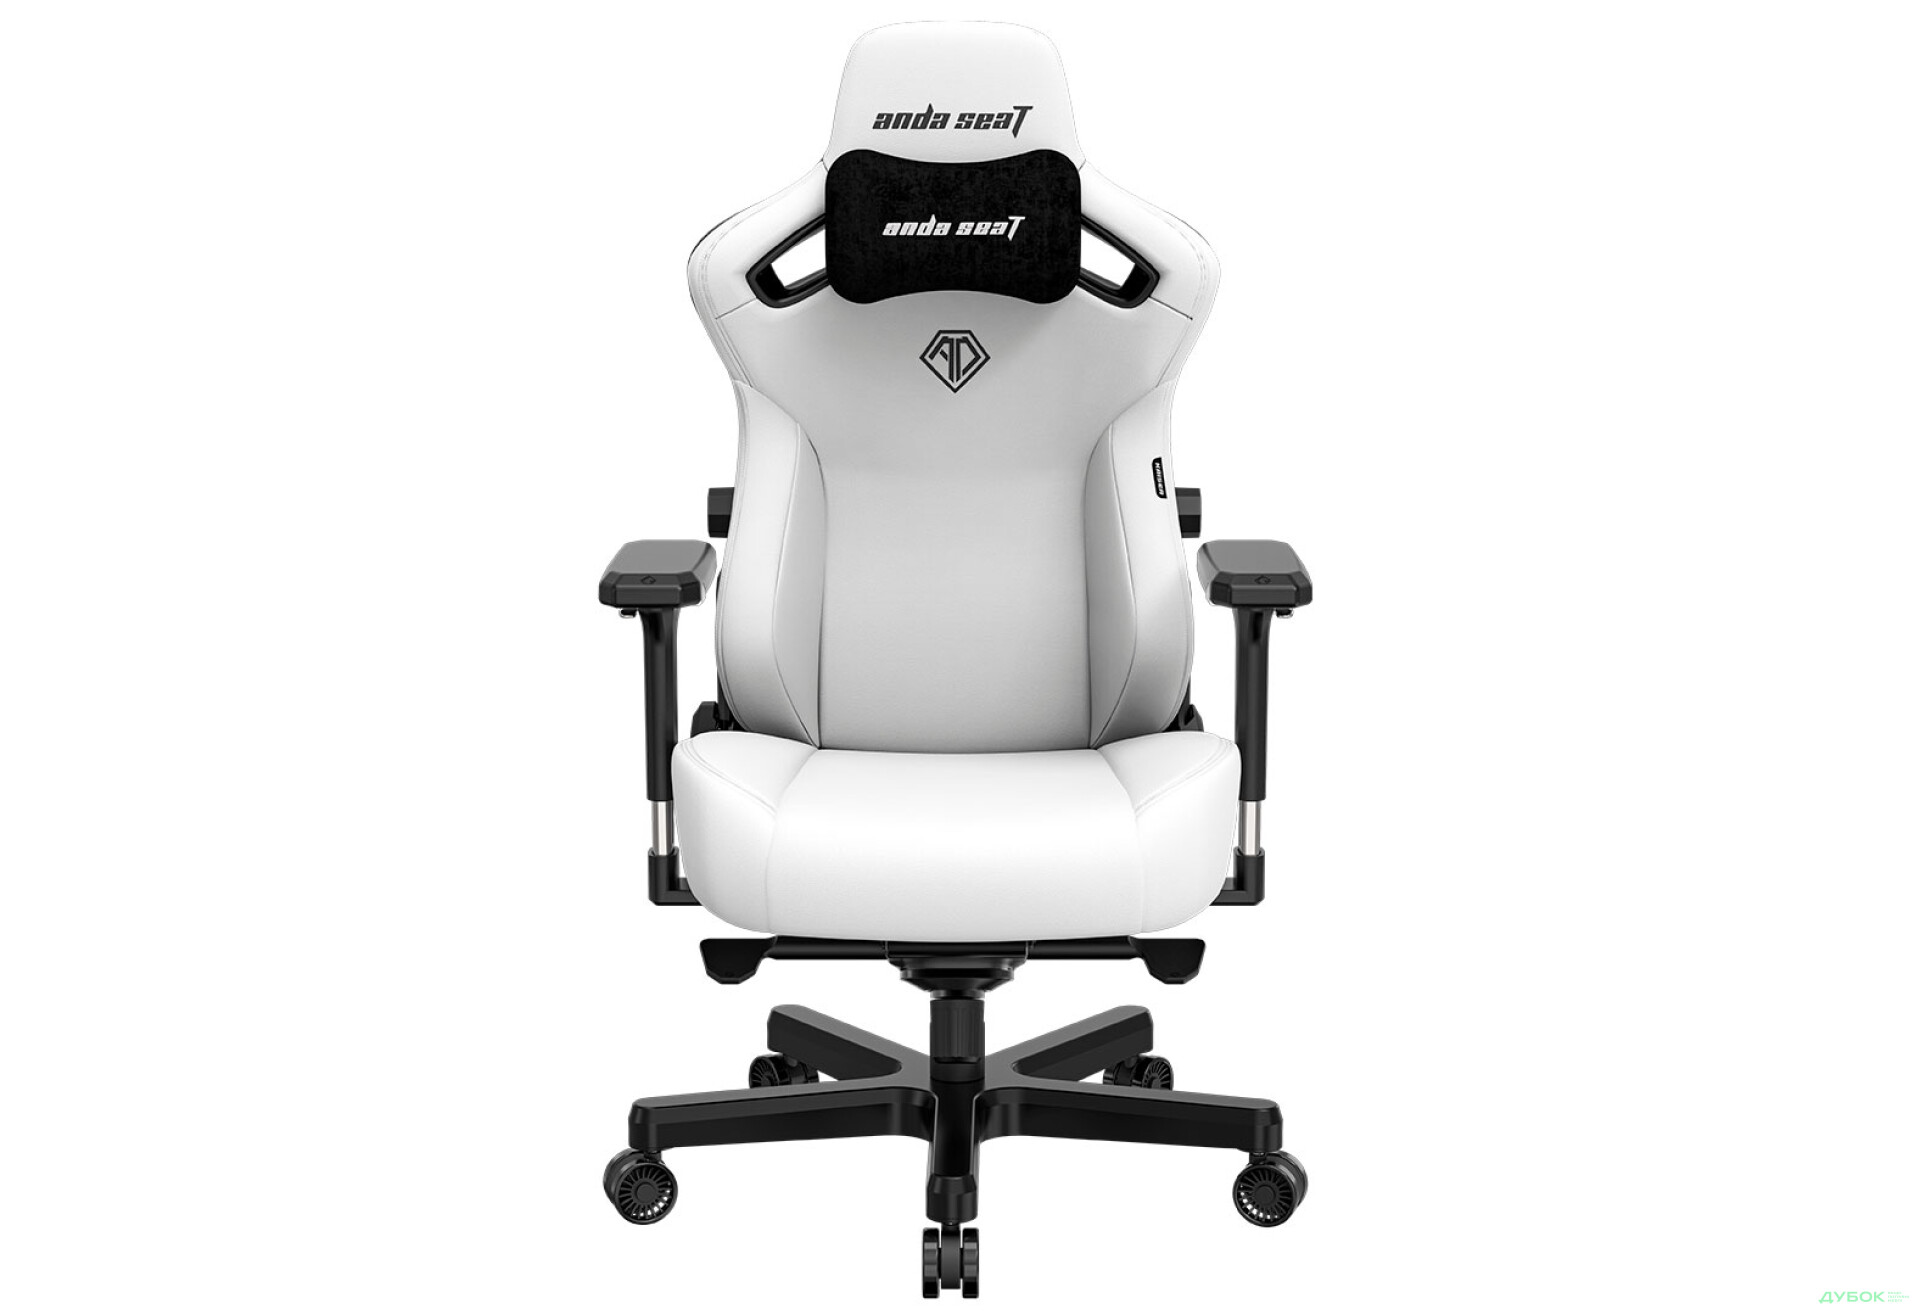 Фото 1 - Компьютерное кресло Anda Seat Kaiser 3 72x57x136 см игровое, белое